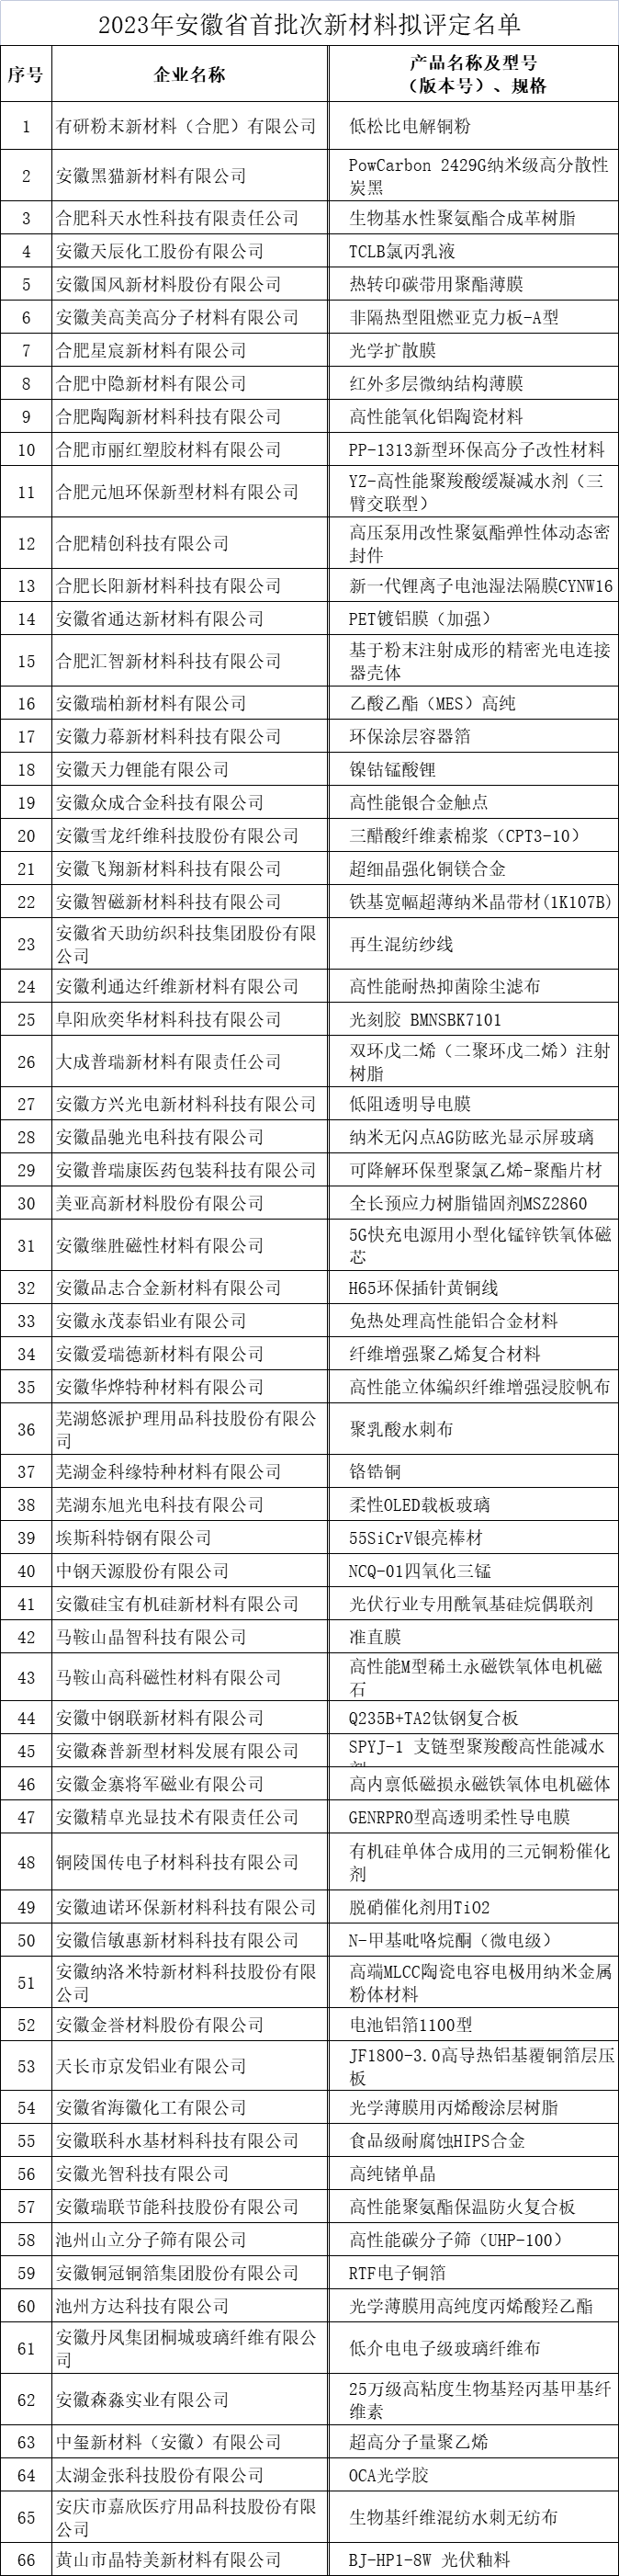 安徽省首批次新材料公示名单